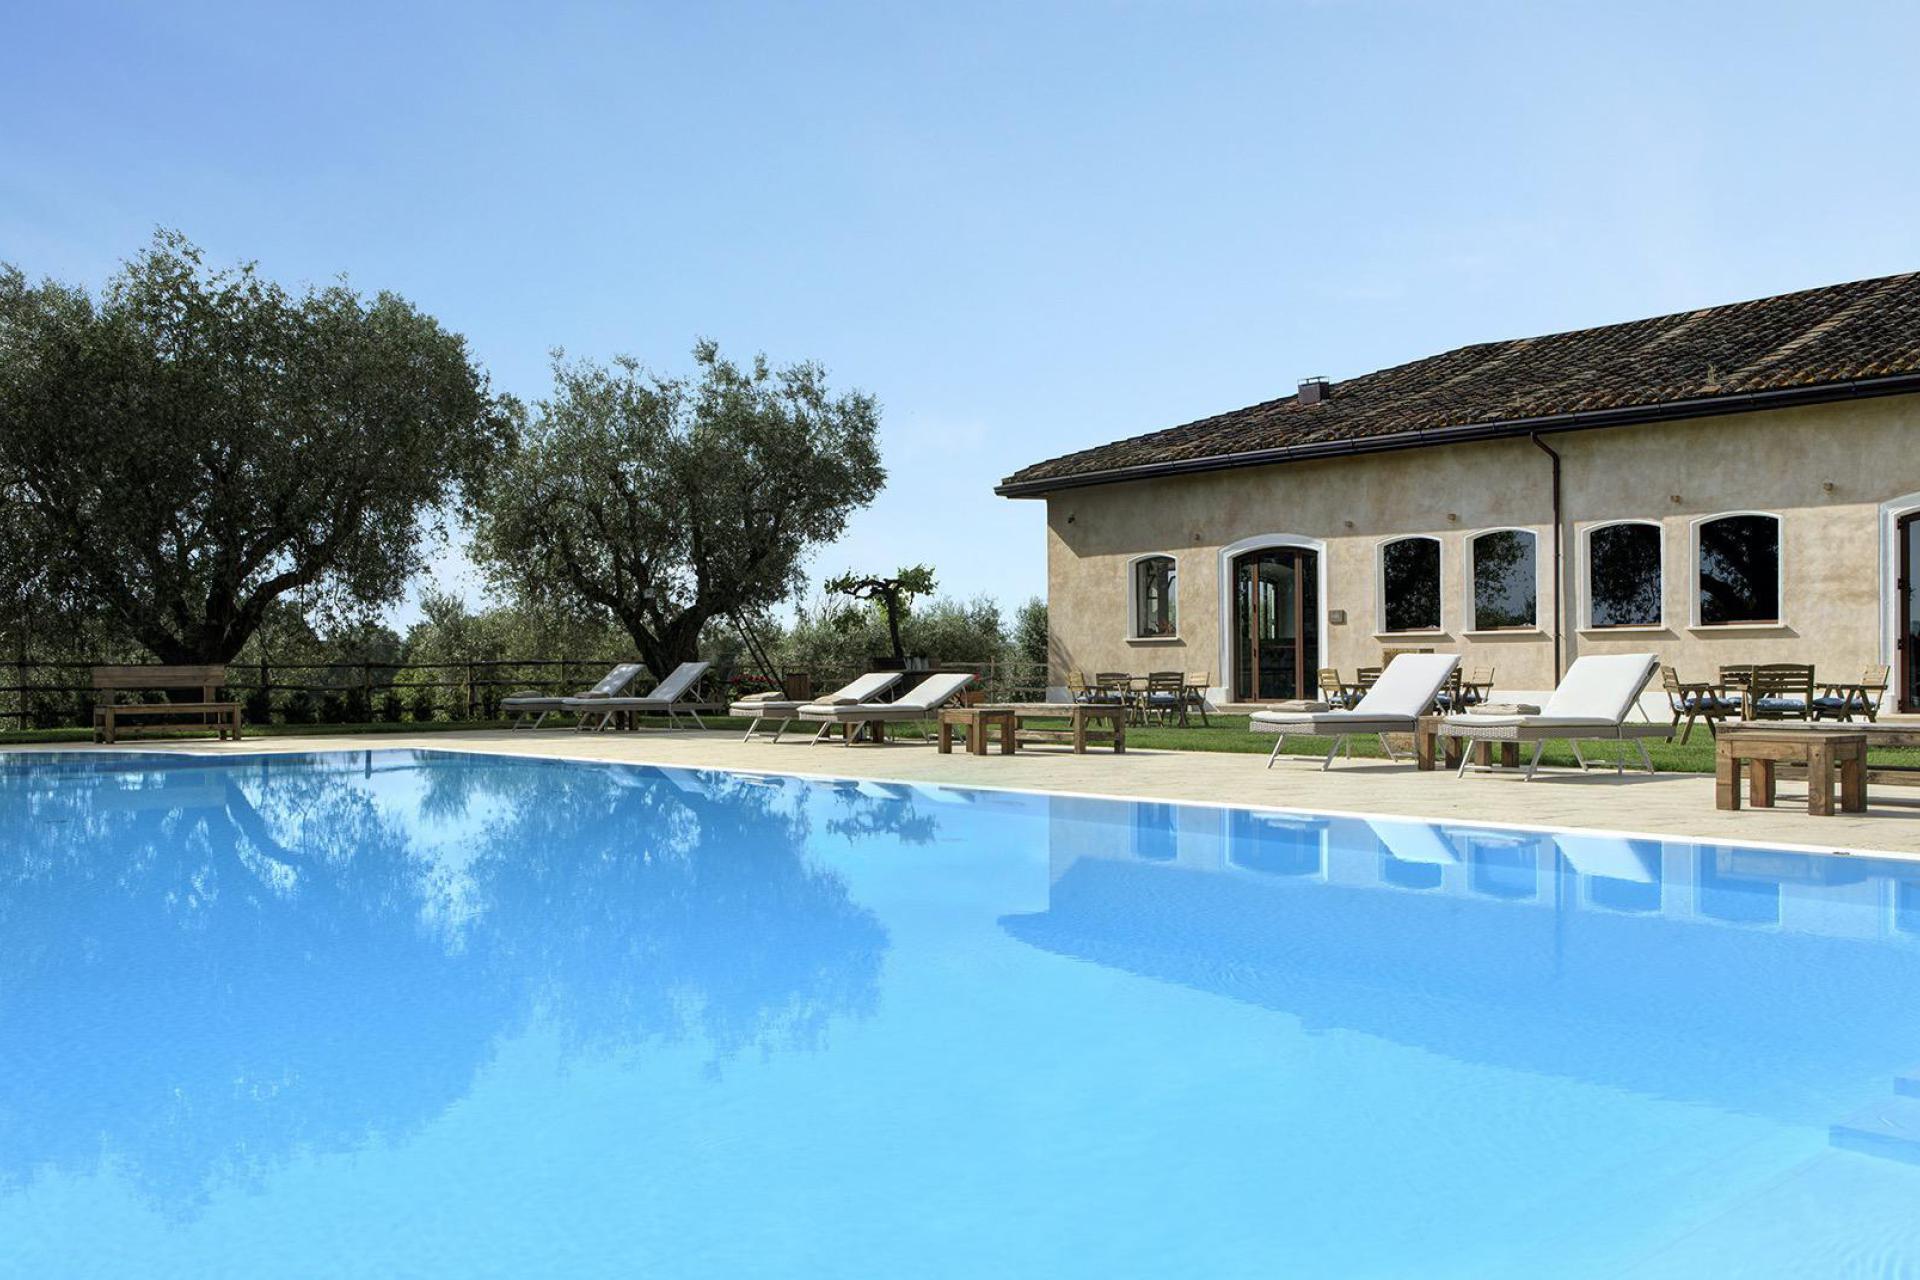 Luxus-Agriturismon nähe Rom mit Restaurant und Pool